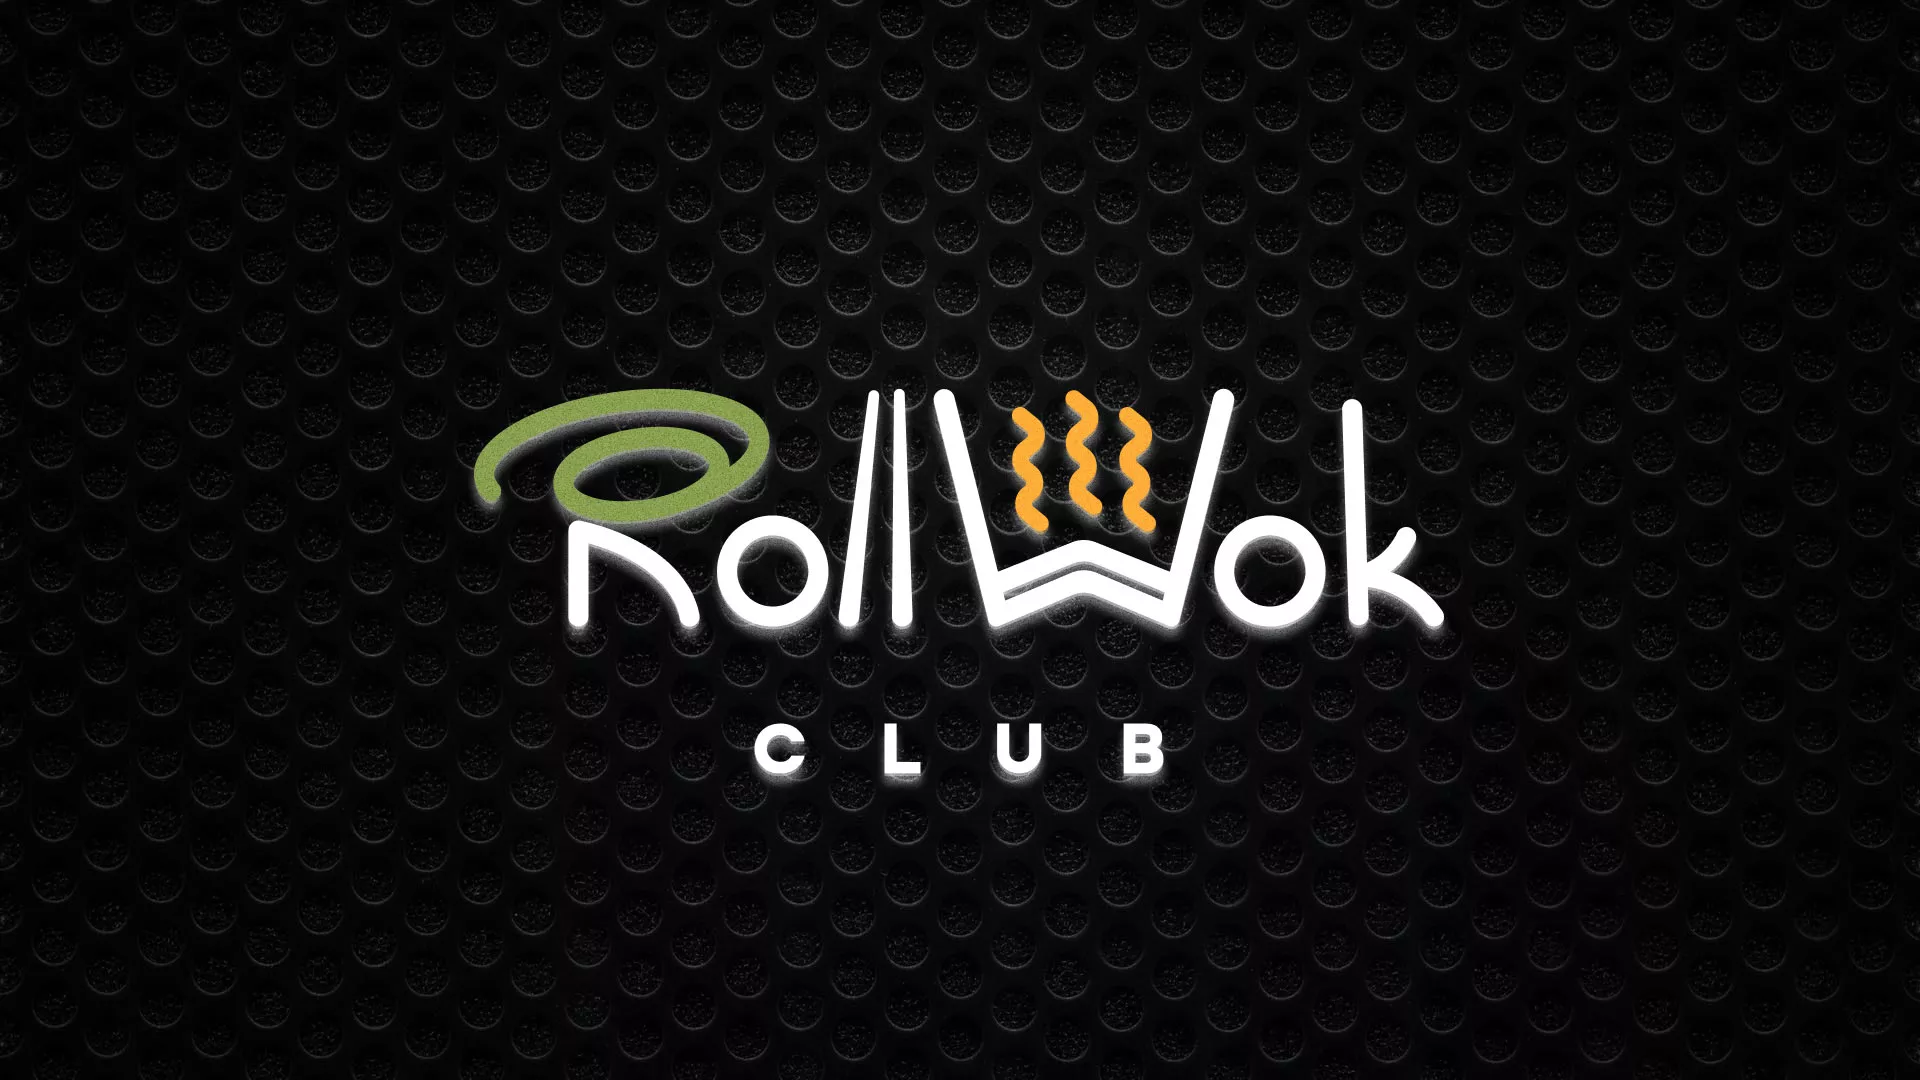 Брендирование торговых точек суши-бара «Roll Wok Club» в Оленегорске